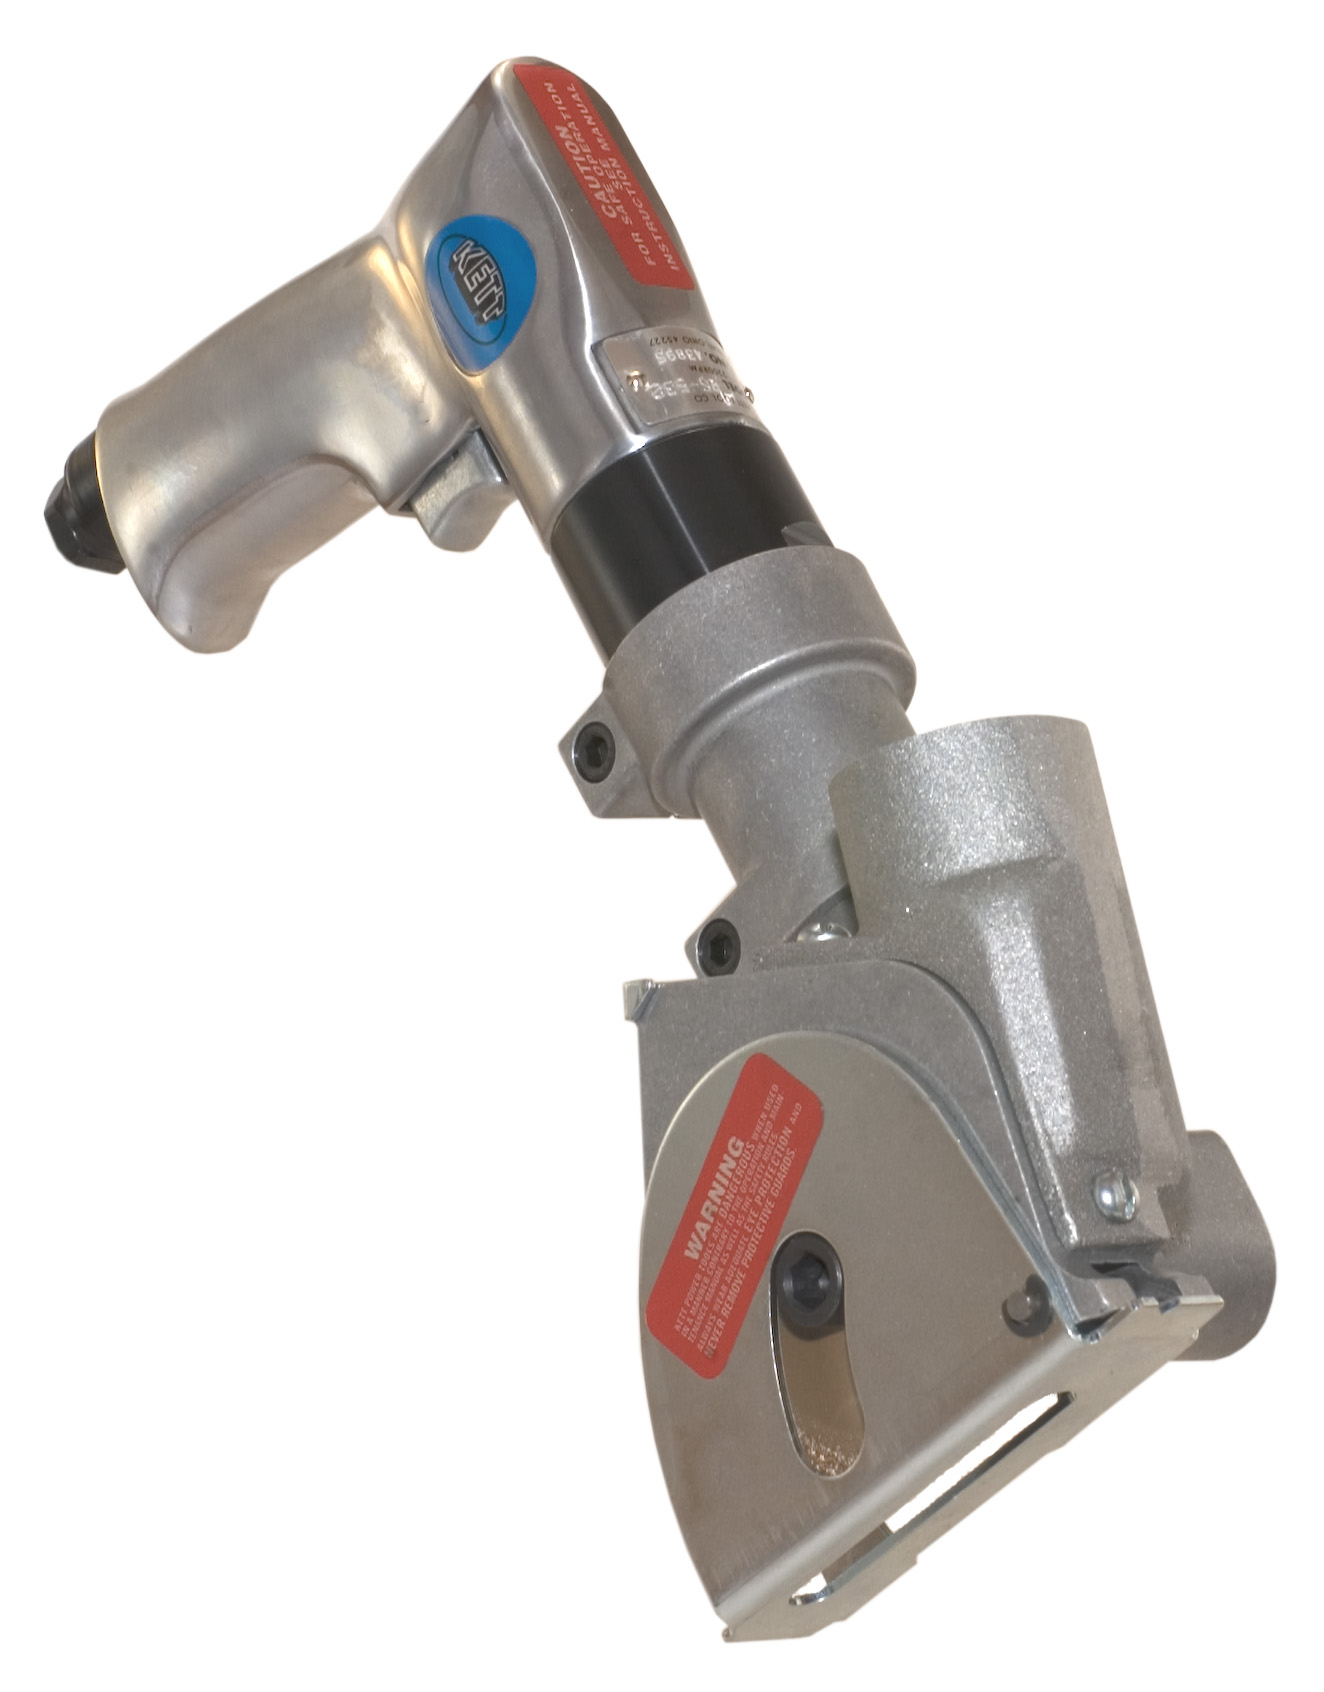 Kett Tool PSV-534 Pneumatic Vacuum Saw